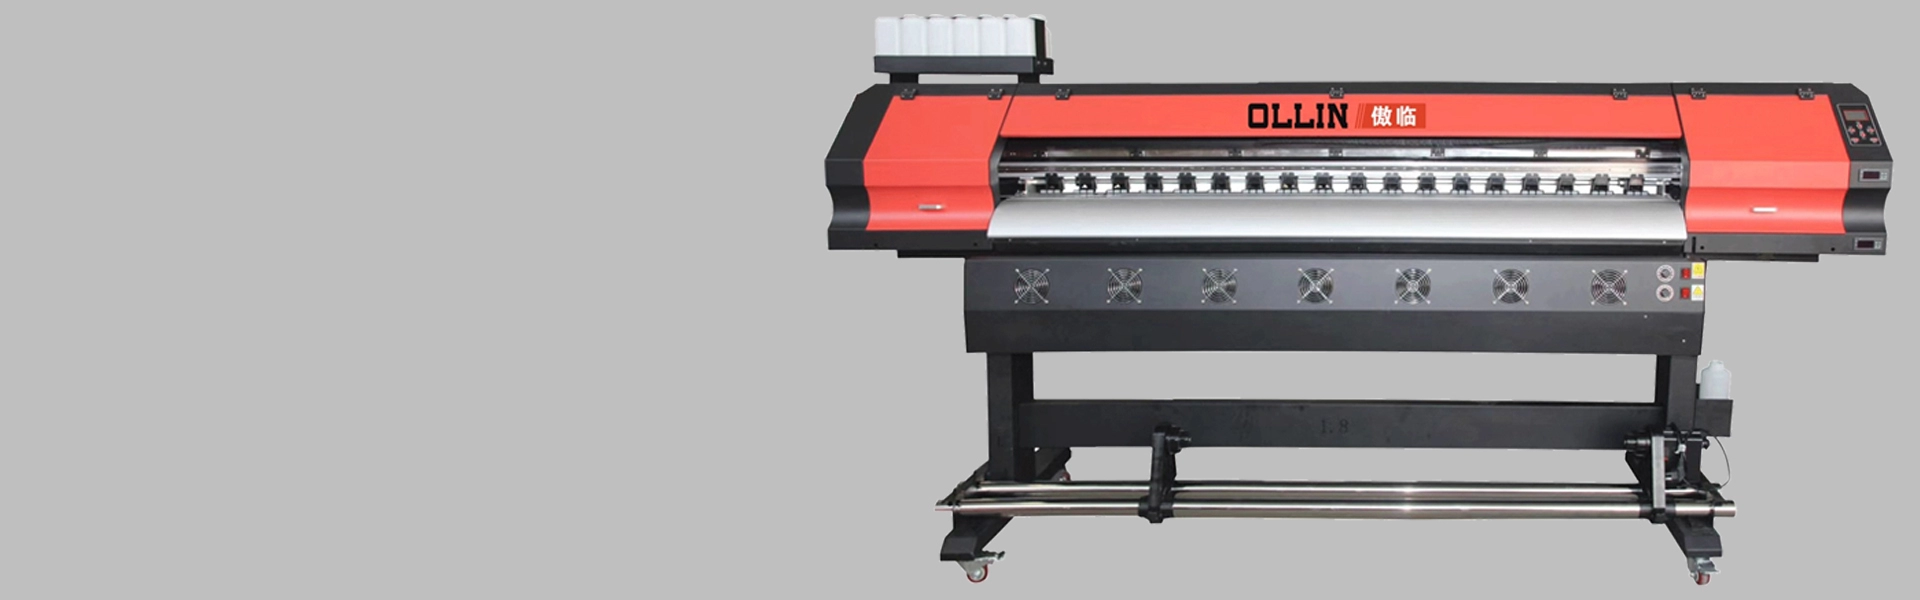 1,9-метровый сублимационный принтер OL-190